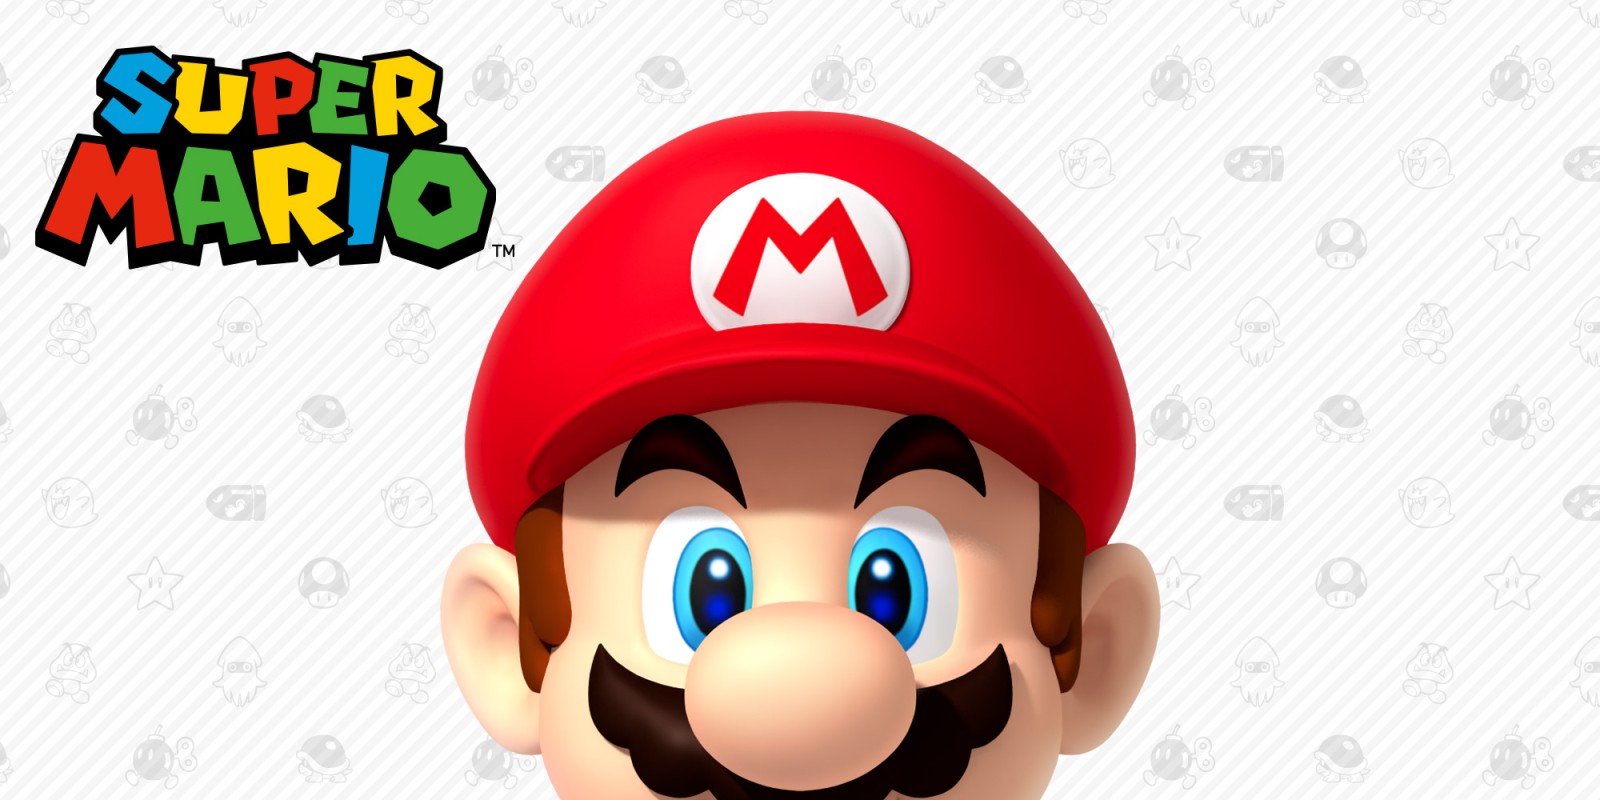 23 กันยายน ตรงกับวันก่อตั้งบริษัท Nintendo